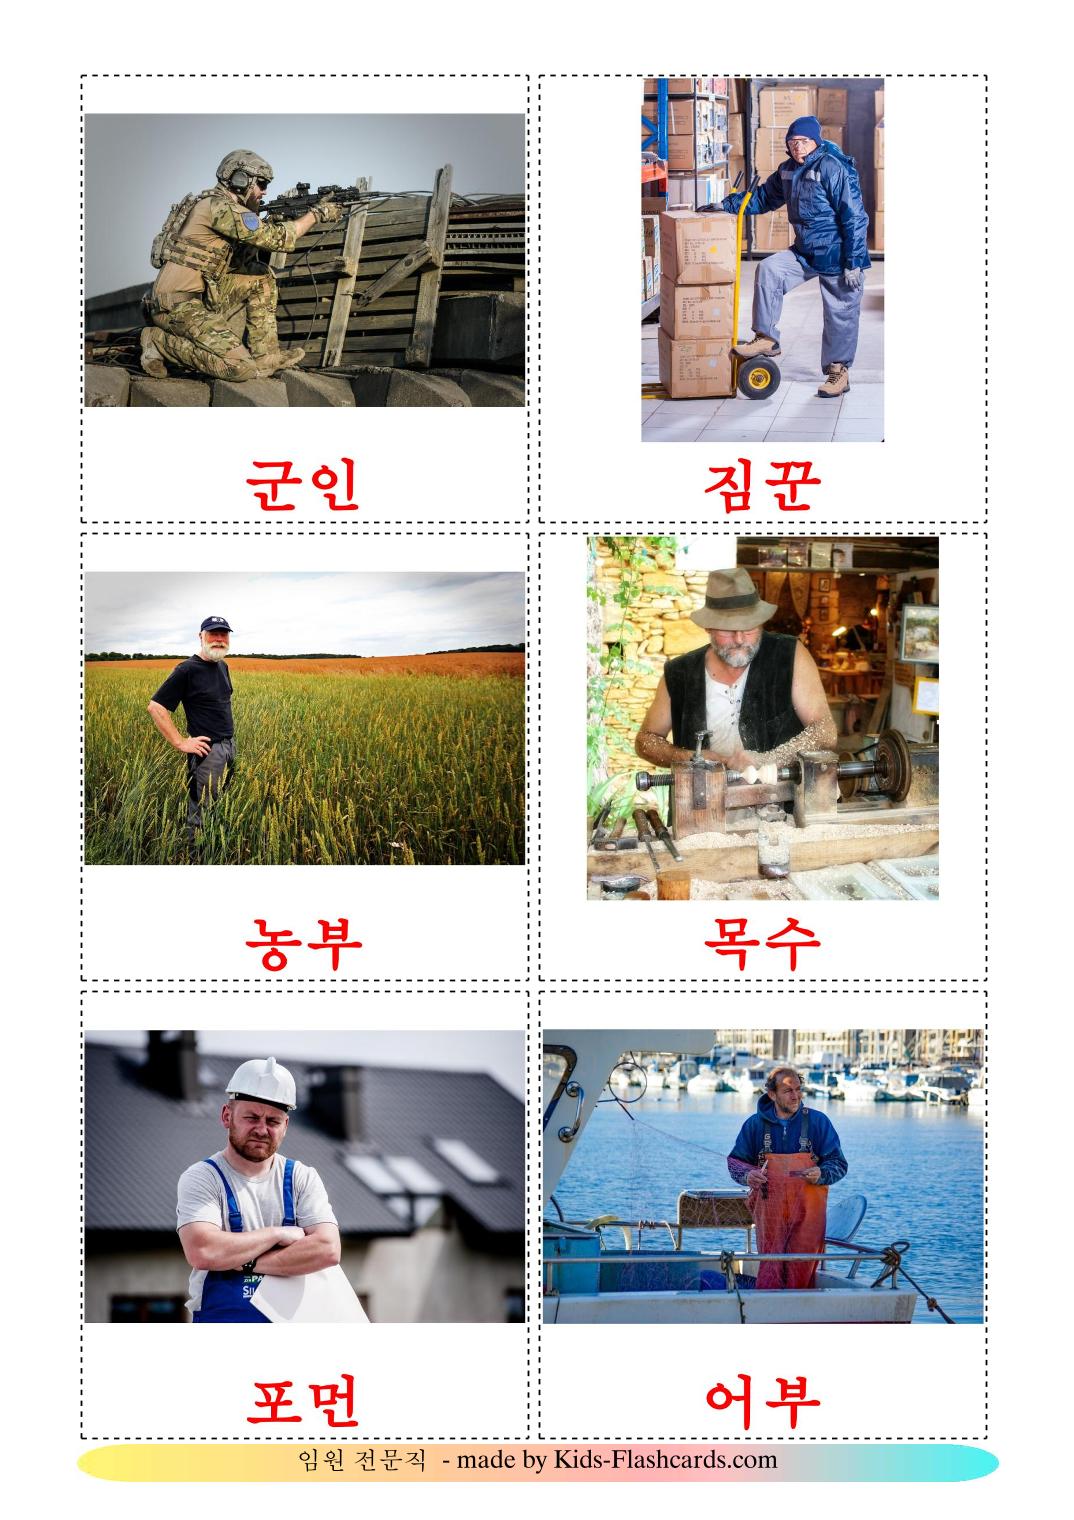 Empregos e ocupações - 51 Flashcards coreanoes gratuitos para impressão